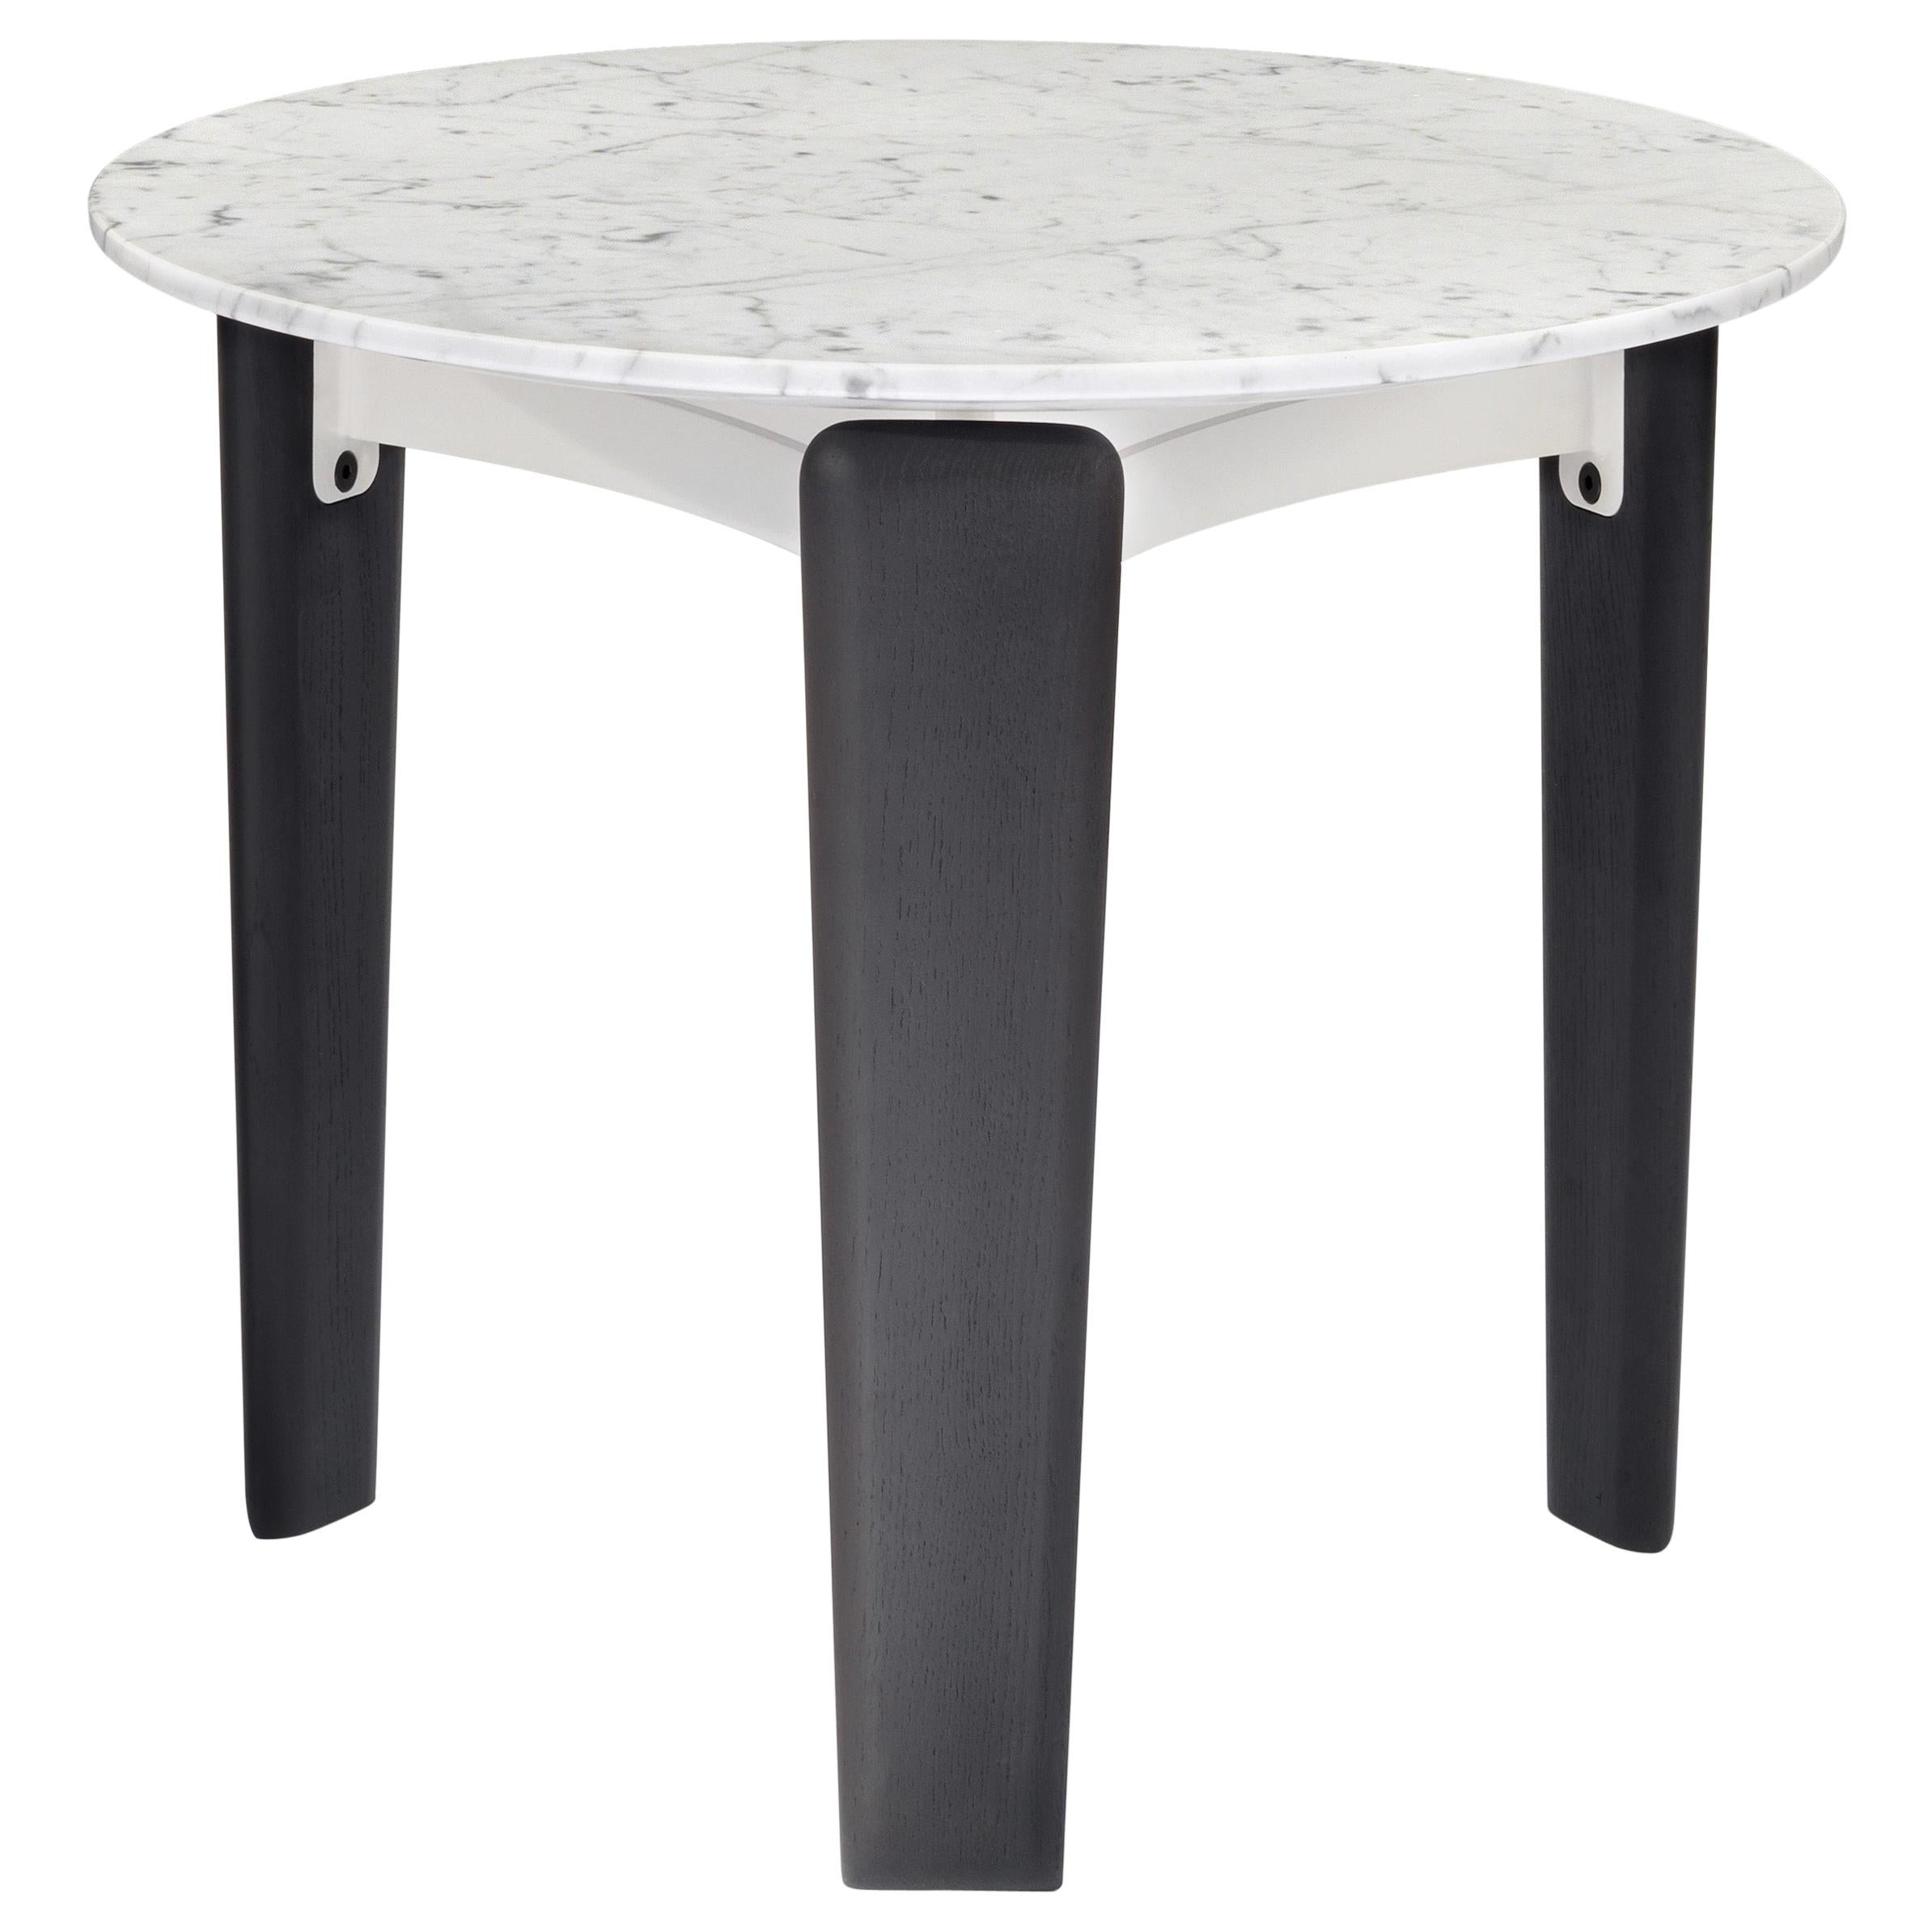 Table haute de table Arflex avec plateau en marbre de Carrare blanc par Claesson Koivisto Rune 